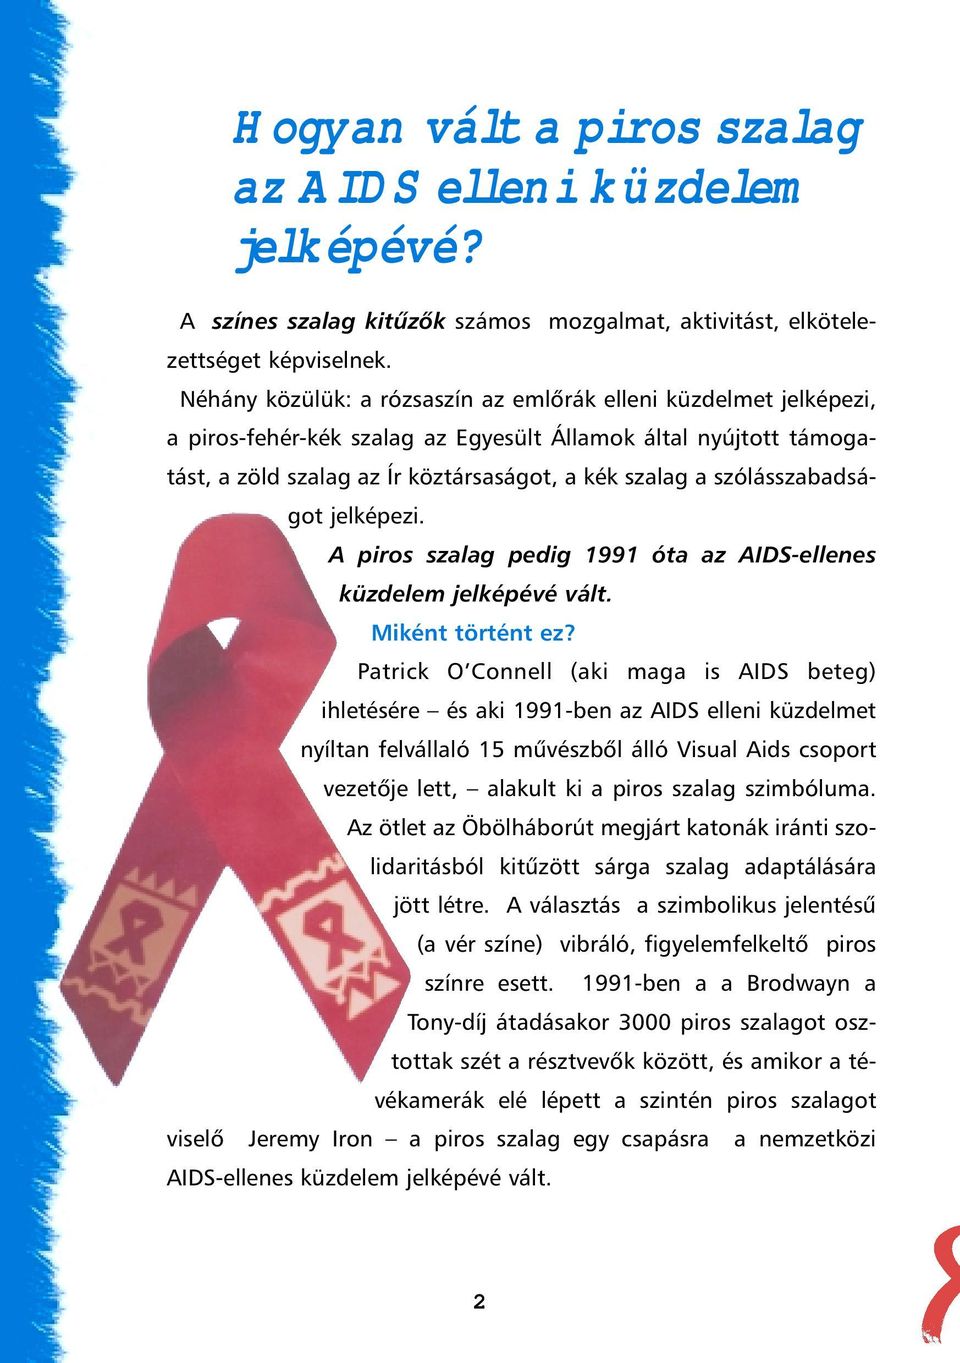 szólásszabadságot jelképezi. A piros szalag pedig 1991 óta az AIDS-ellenes küzdelem jelképévé vált. Miként történt ez?